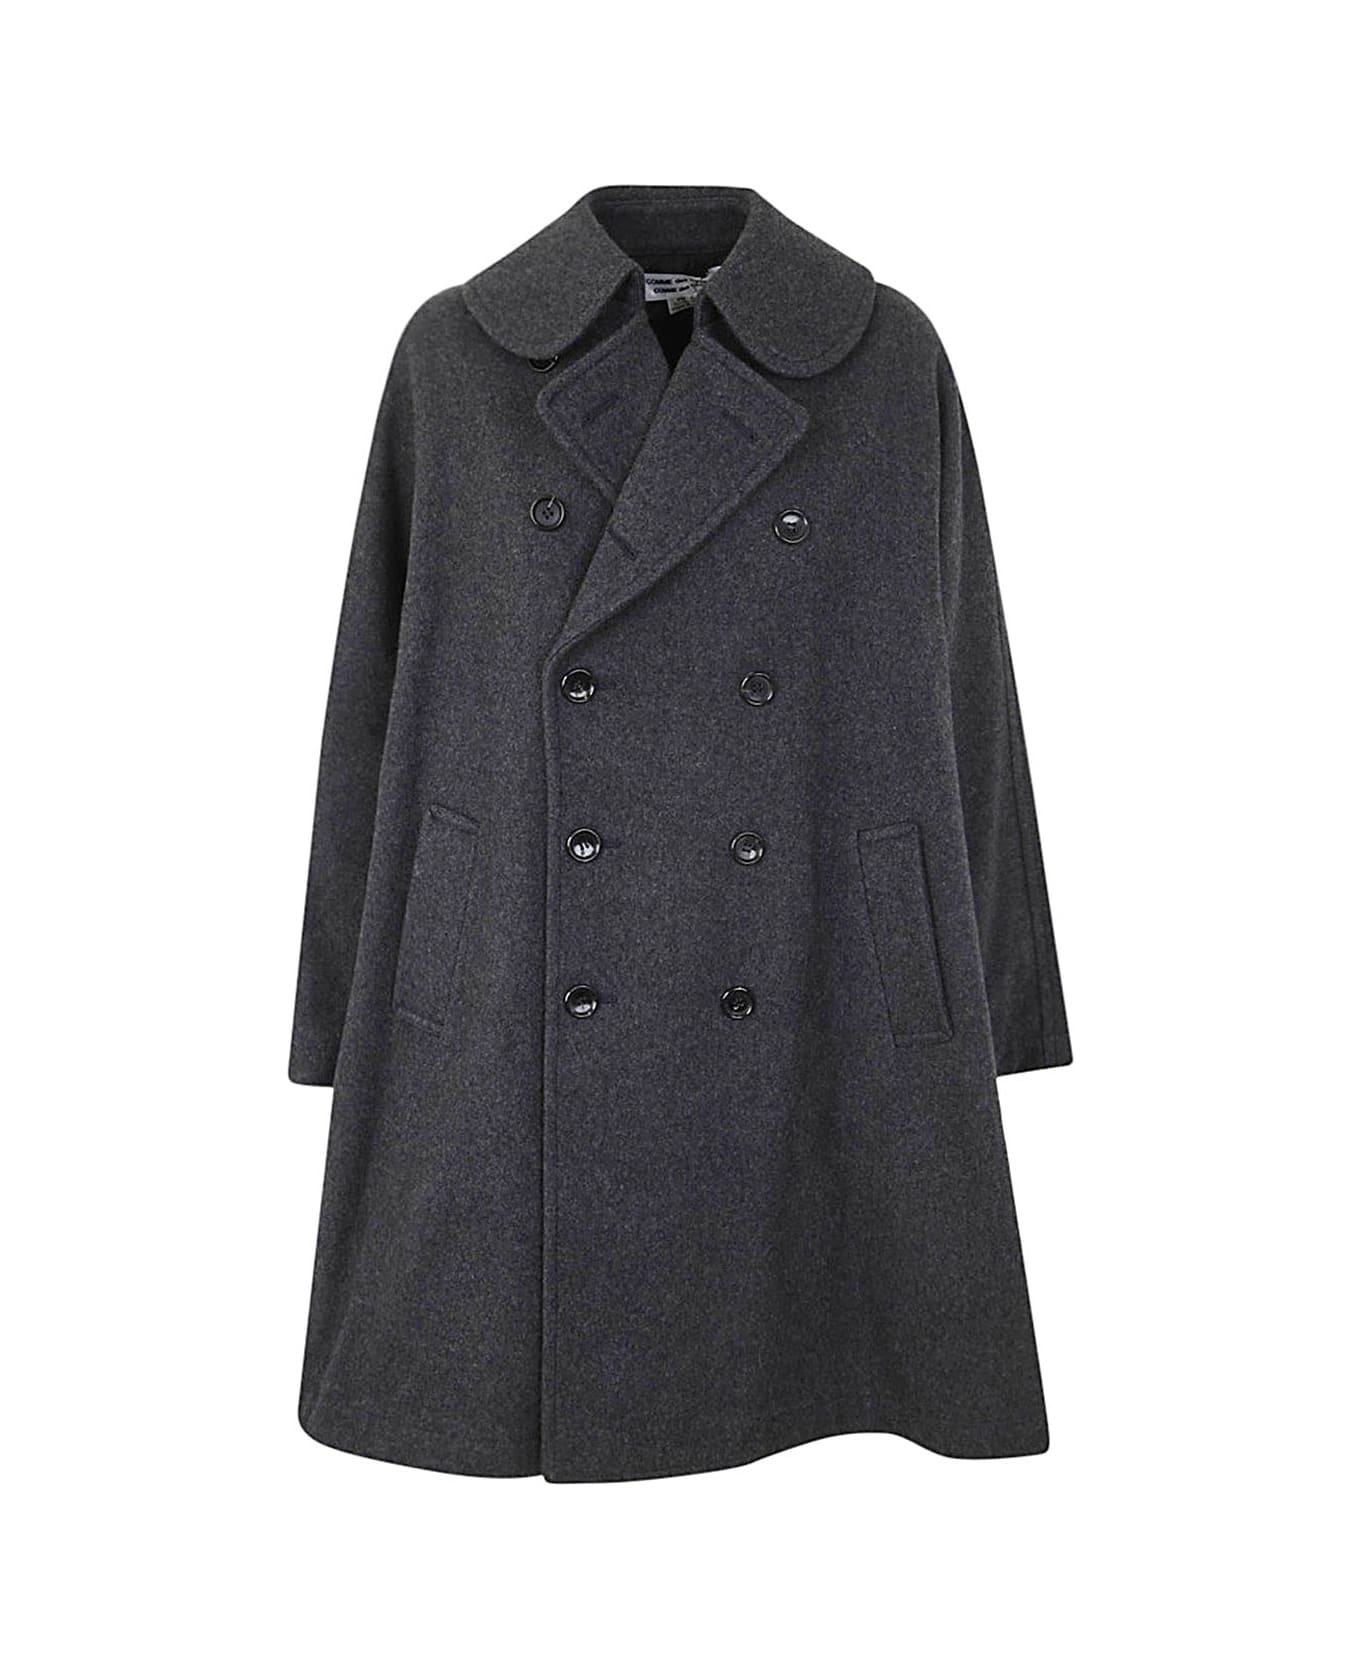 Comme des Garçons Comme des Garçons Ladies` Coat - Charcoal Grey コート